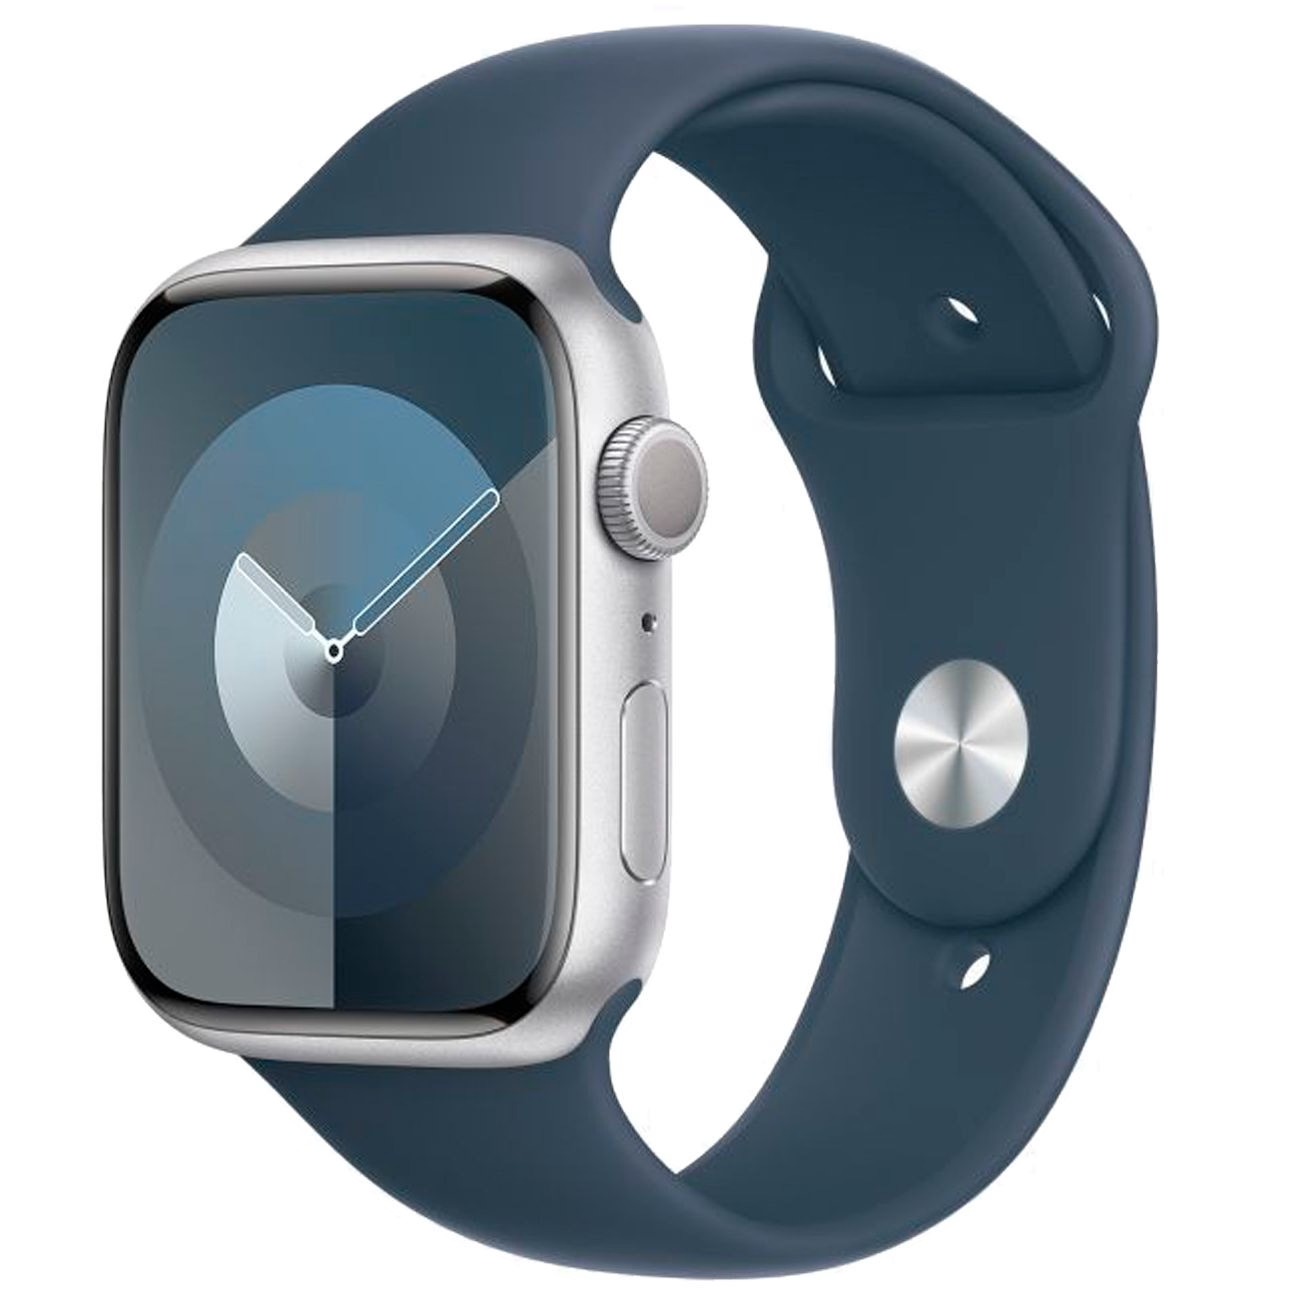 Купить смарт-часы apple watch s9 45mm silver aluminium/white Apple Watch 9 в официальном магазине Apple, Samsung, Xiaomi. iPixel.ru Купить, заказ, кредит, рассрочка, отзывы,  характеристики, цена,  фотографии, в подарок.